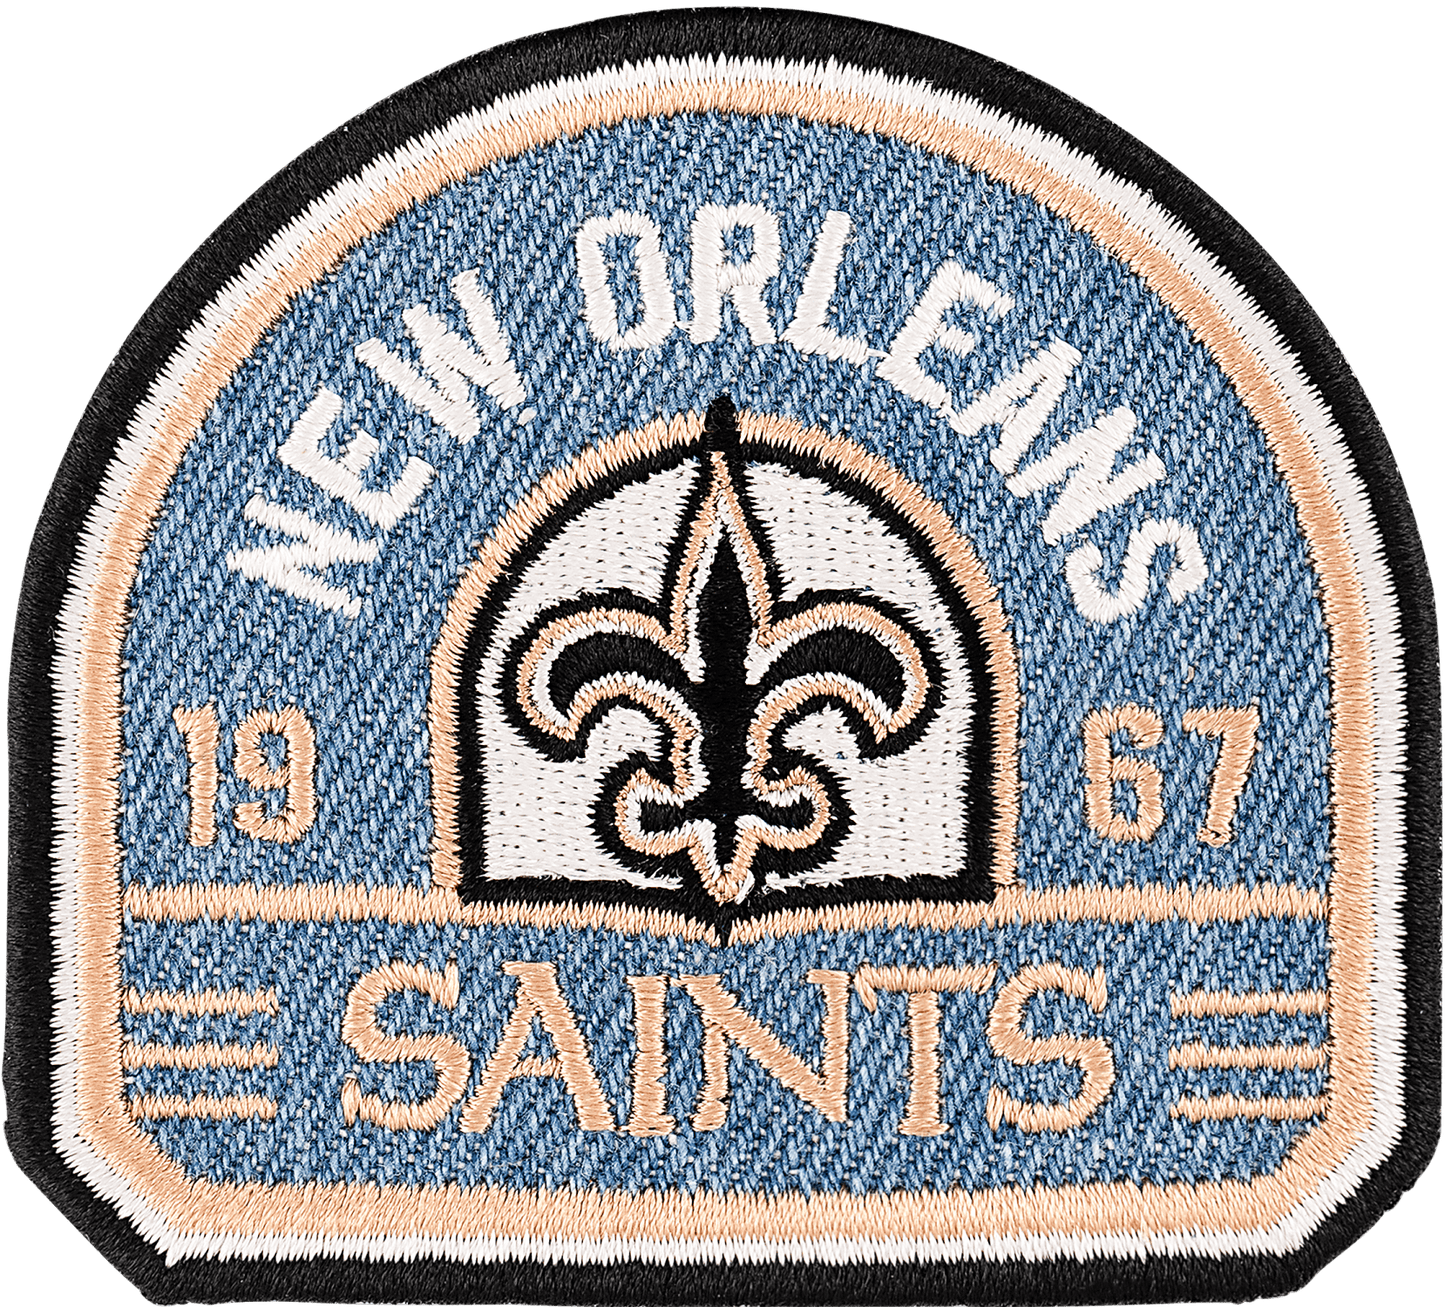 New Orleans Saints Patch